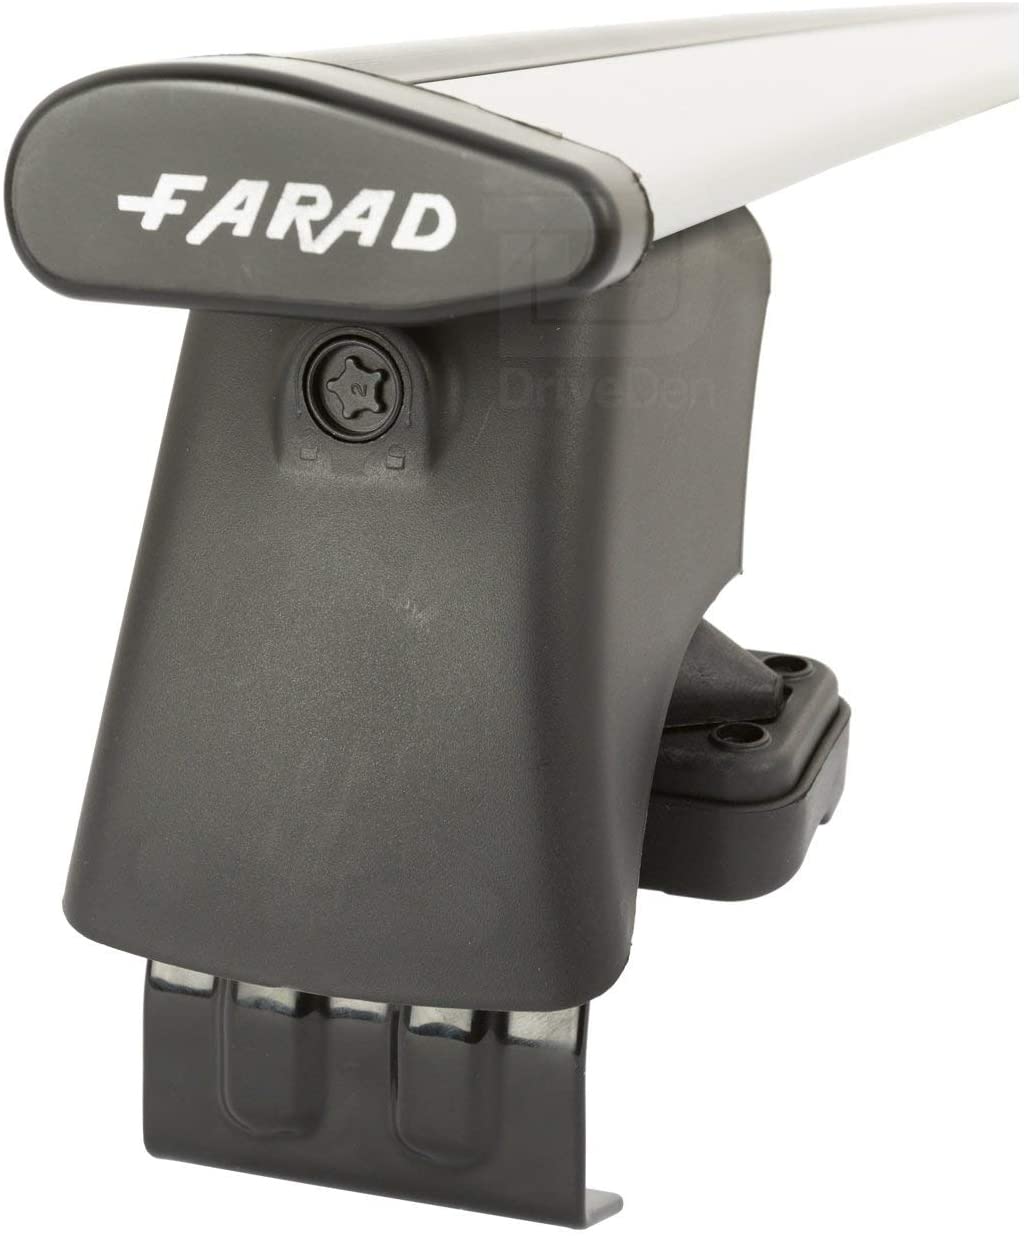 FARAD-Kit H2 per barre portatutto - Volkswagen Touareg 2010-2017 (senza corrimano)